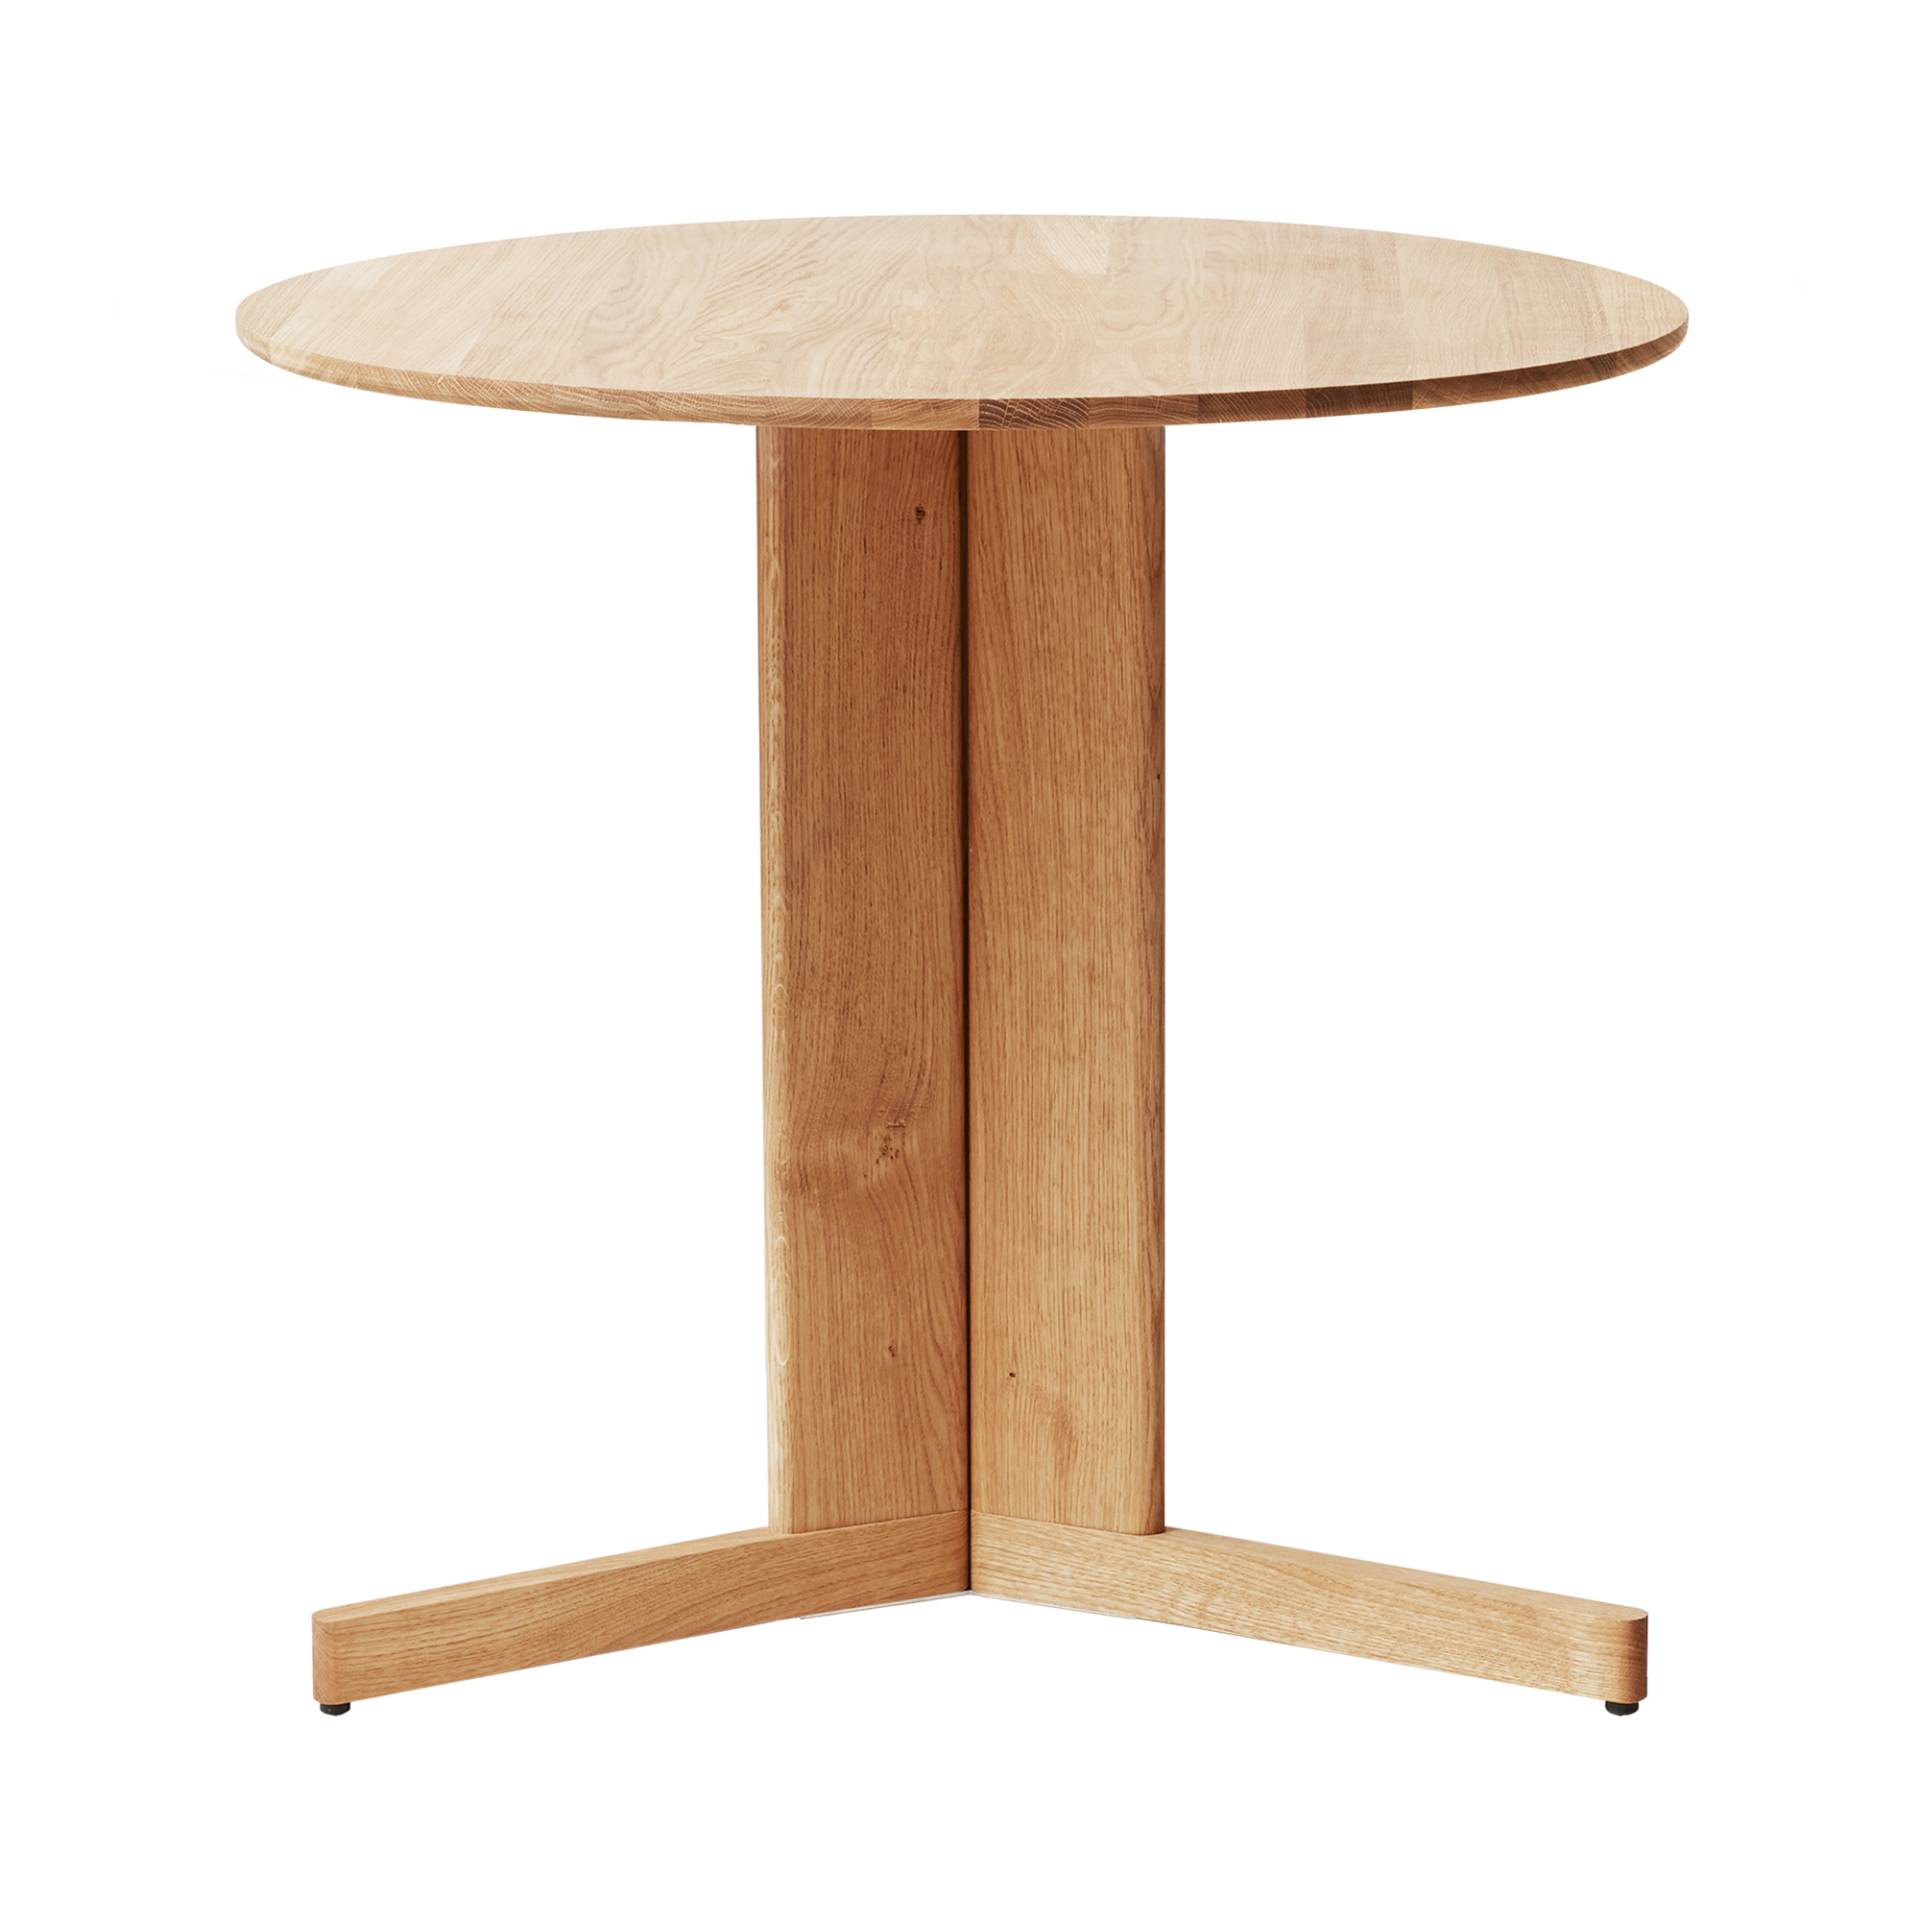 Form & Refine - Trefoil Tisch Ø75cm - weißeiche/pigmentiert, geölt/H x Ø 72,5x75cm von Form & Refine